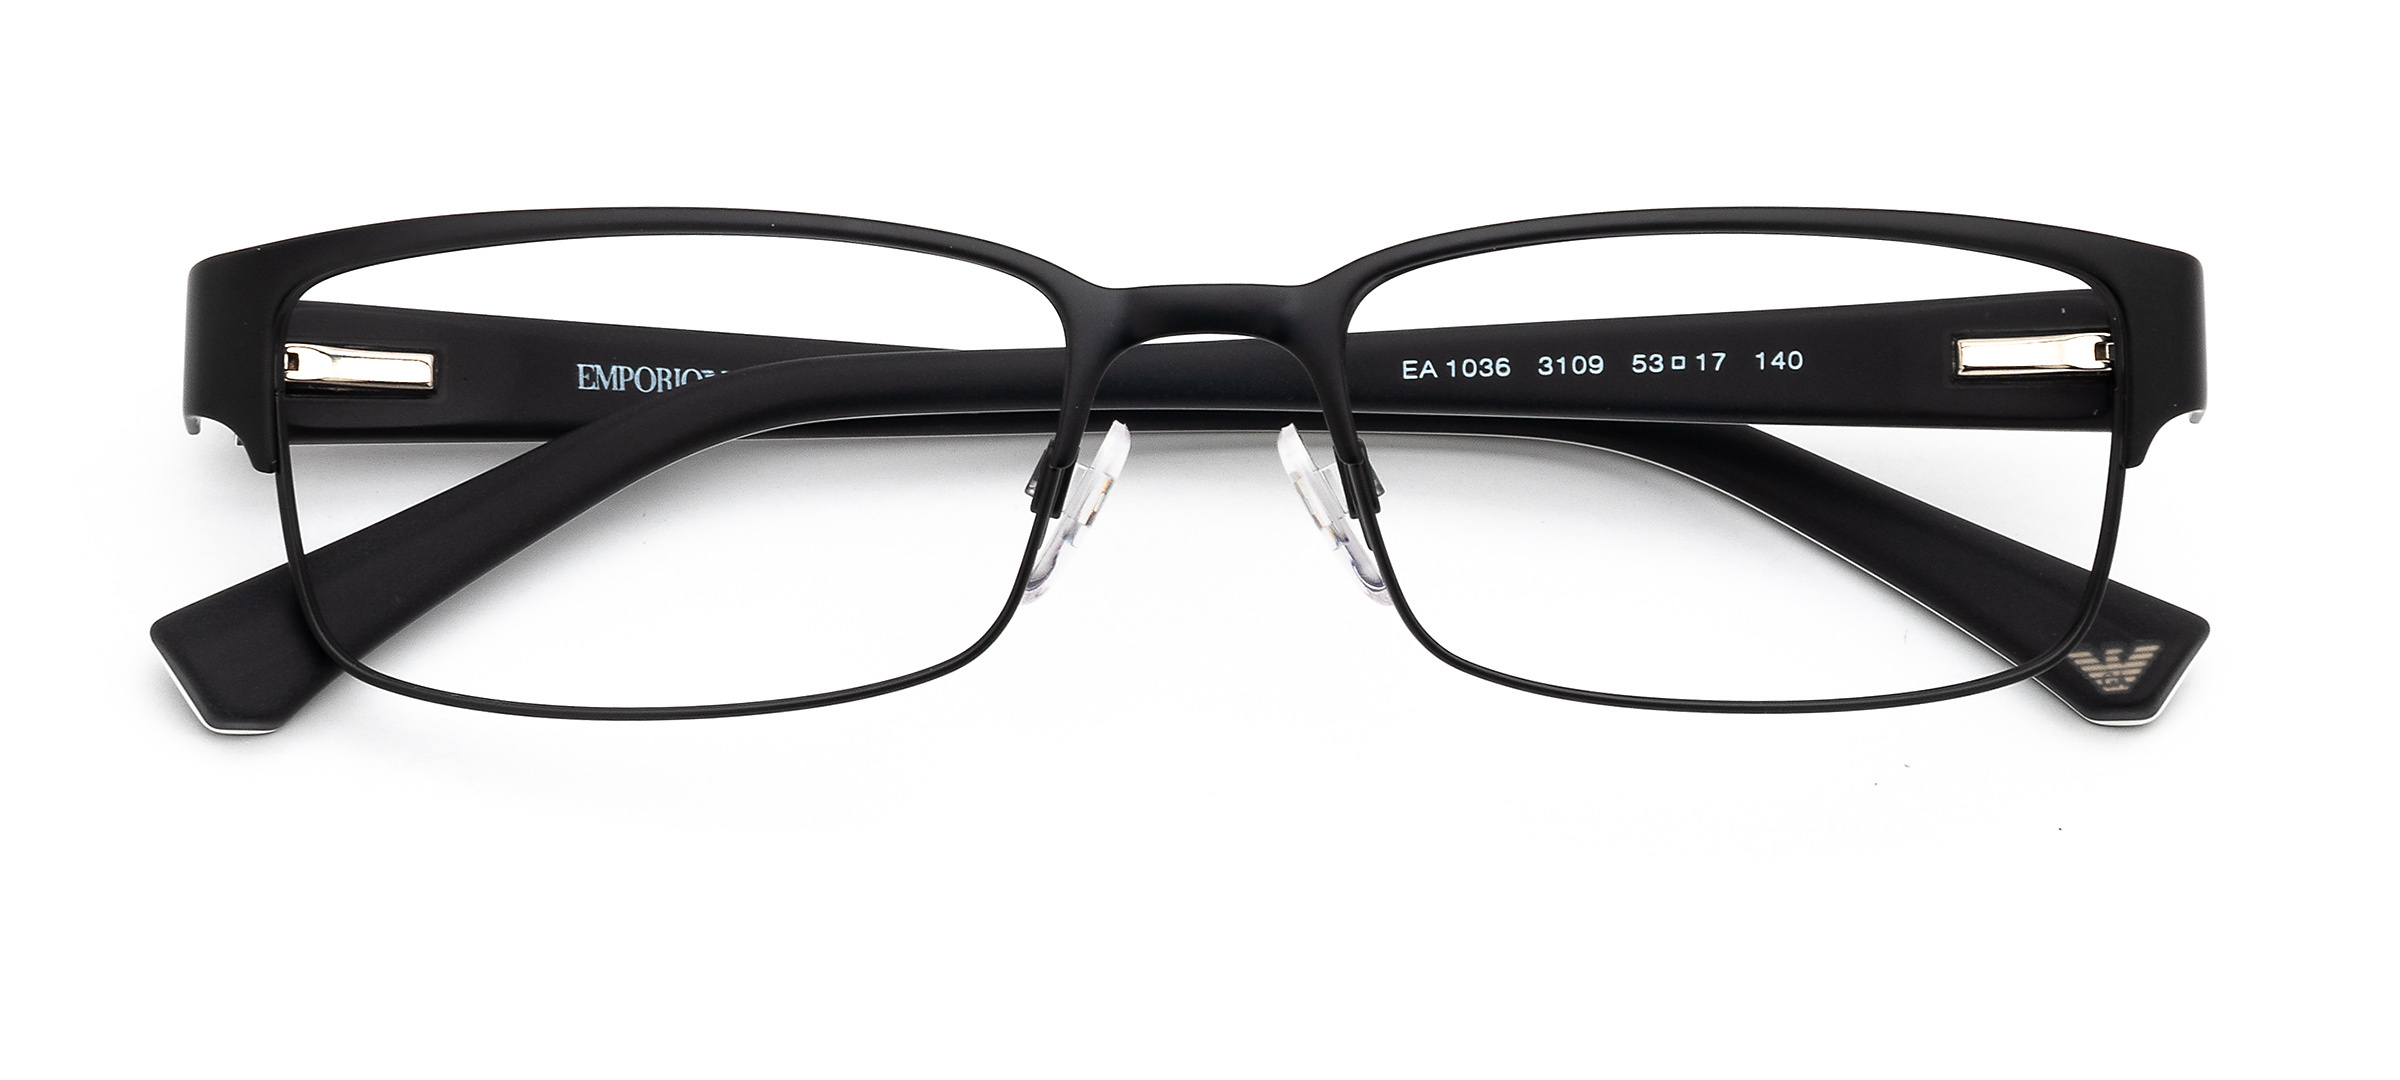 Emporio Armani Glasses for Men & Women | Clearly